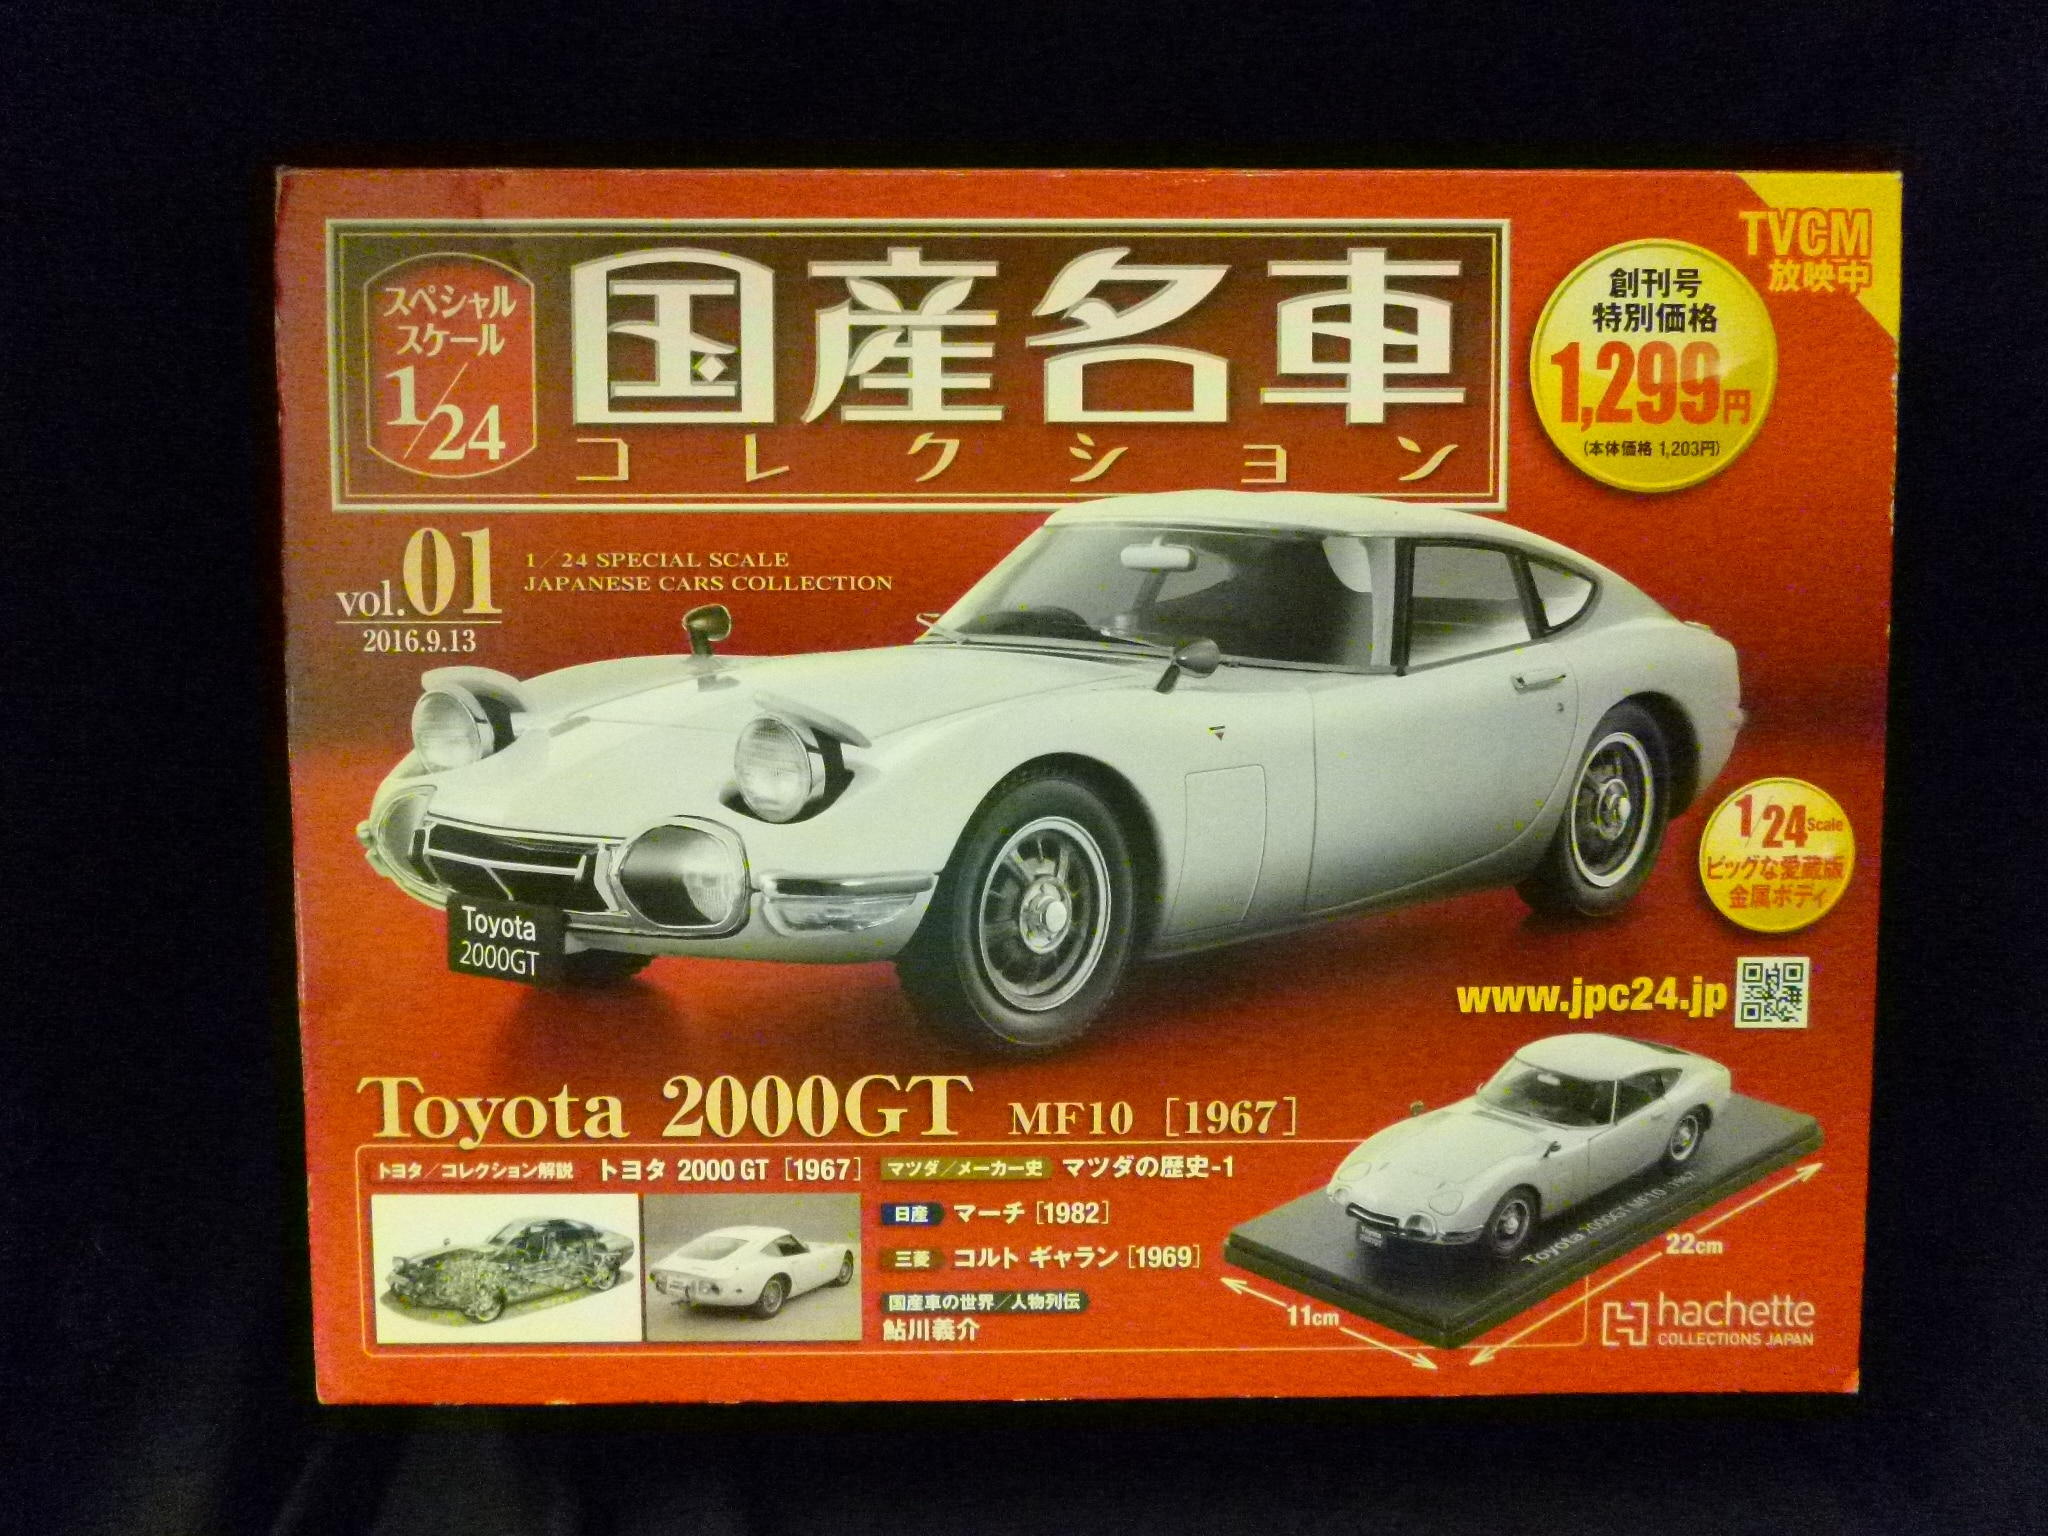 アシェット 1 24 国産名車コレクション トヨタ00gt Mf10 1967 Tvcm放映中版 Vol 01 まんだらけ Mandarake